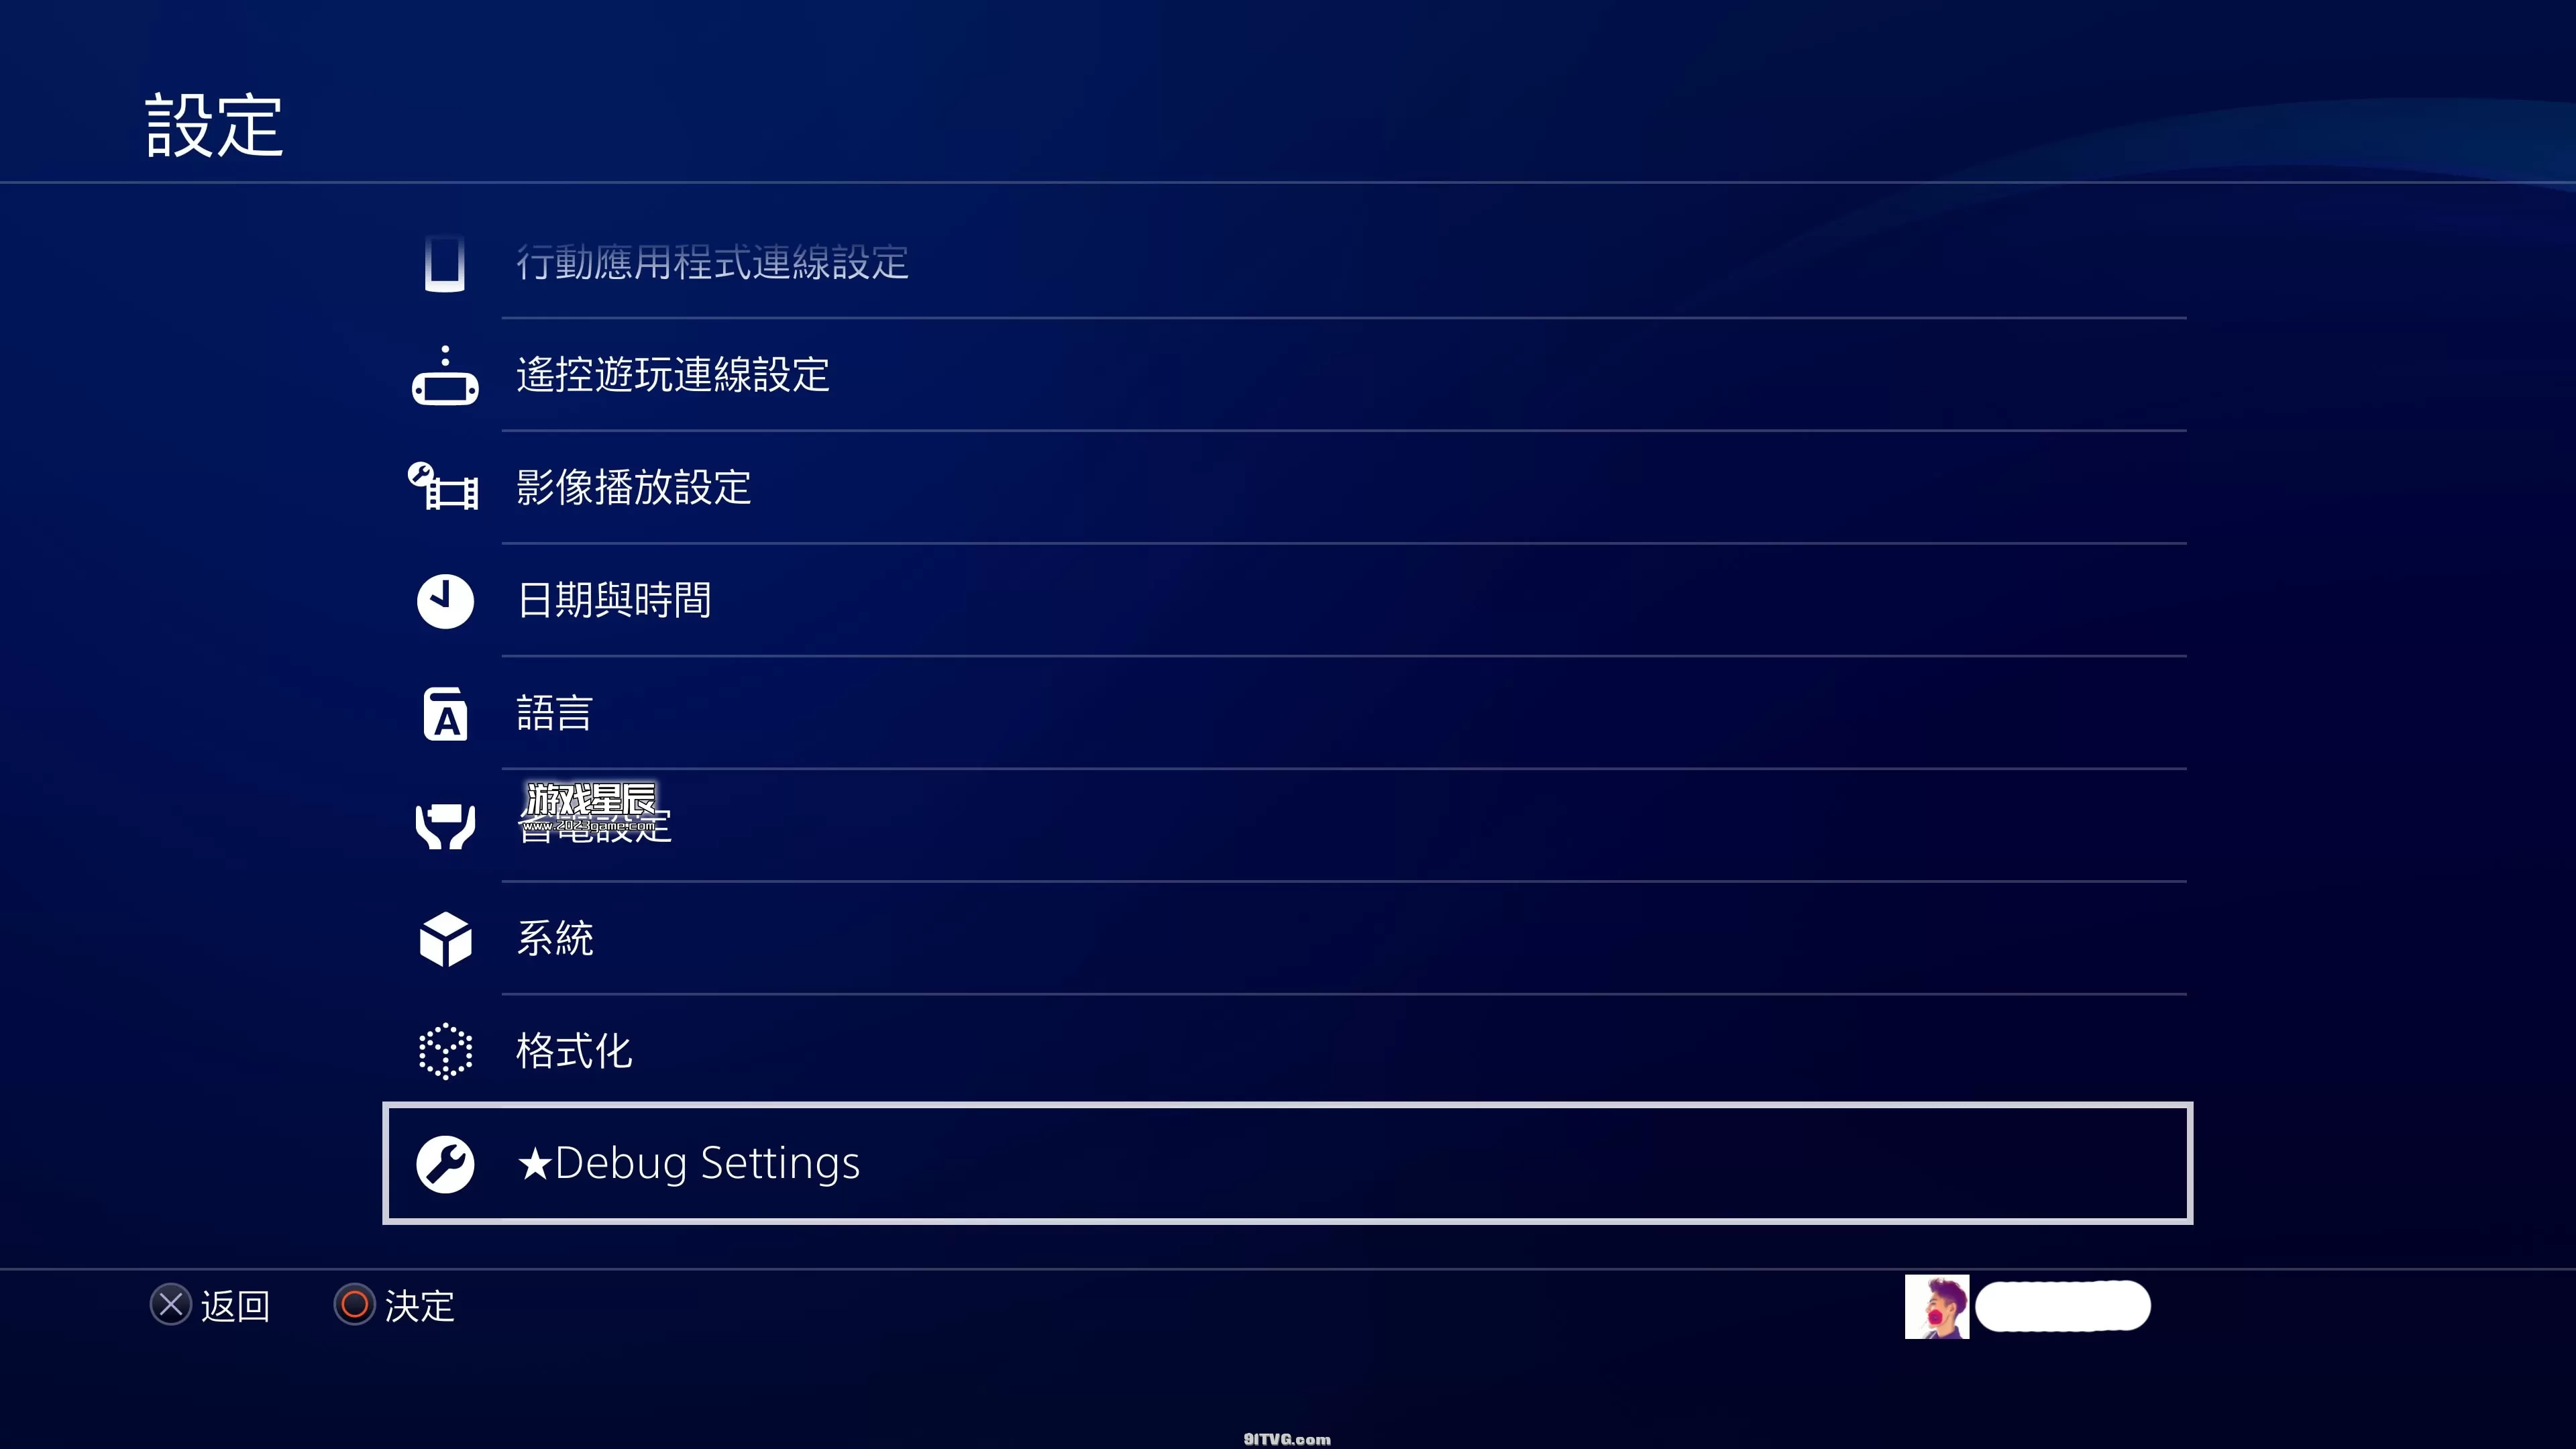 【萌新必看】PS4 9.0离线升级教程+安装游戏教程+9.0破解教程_11